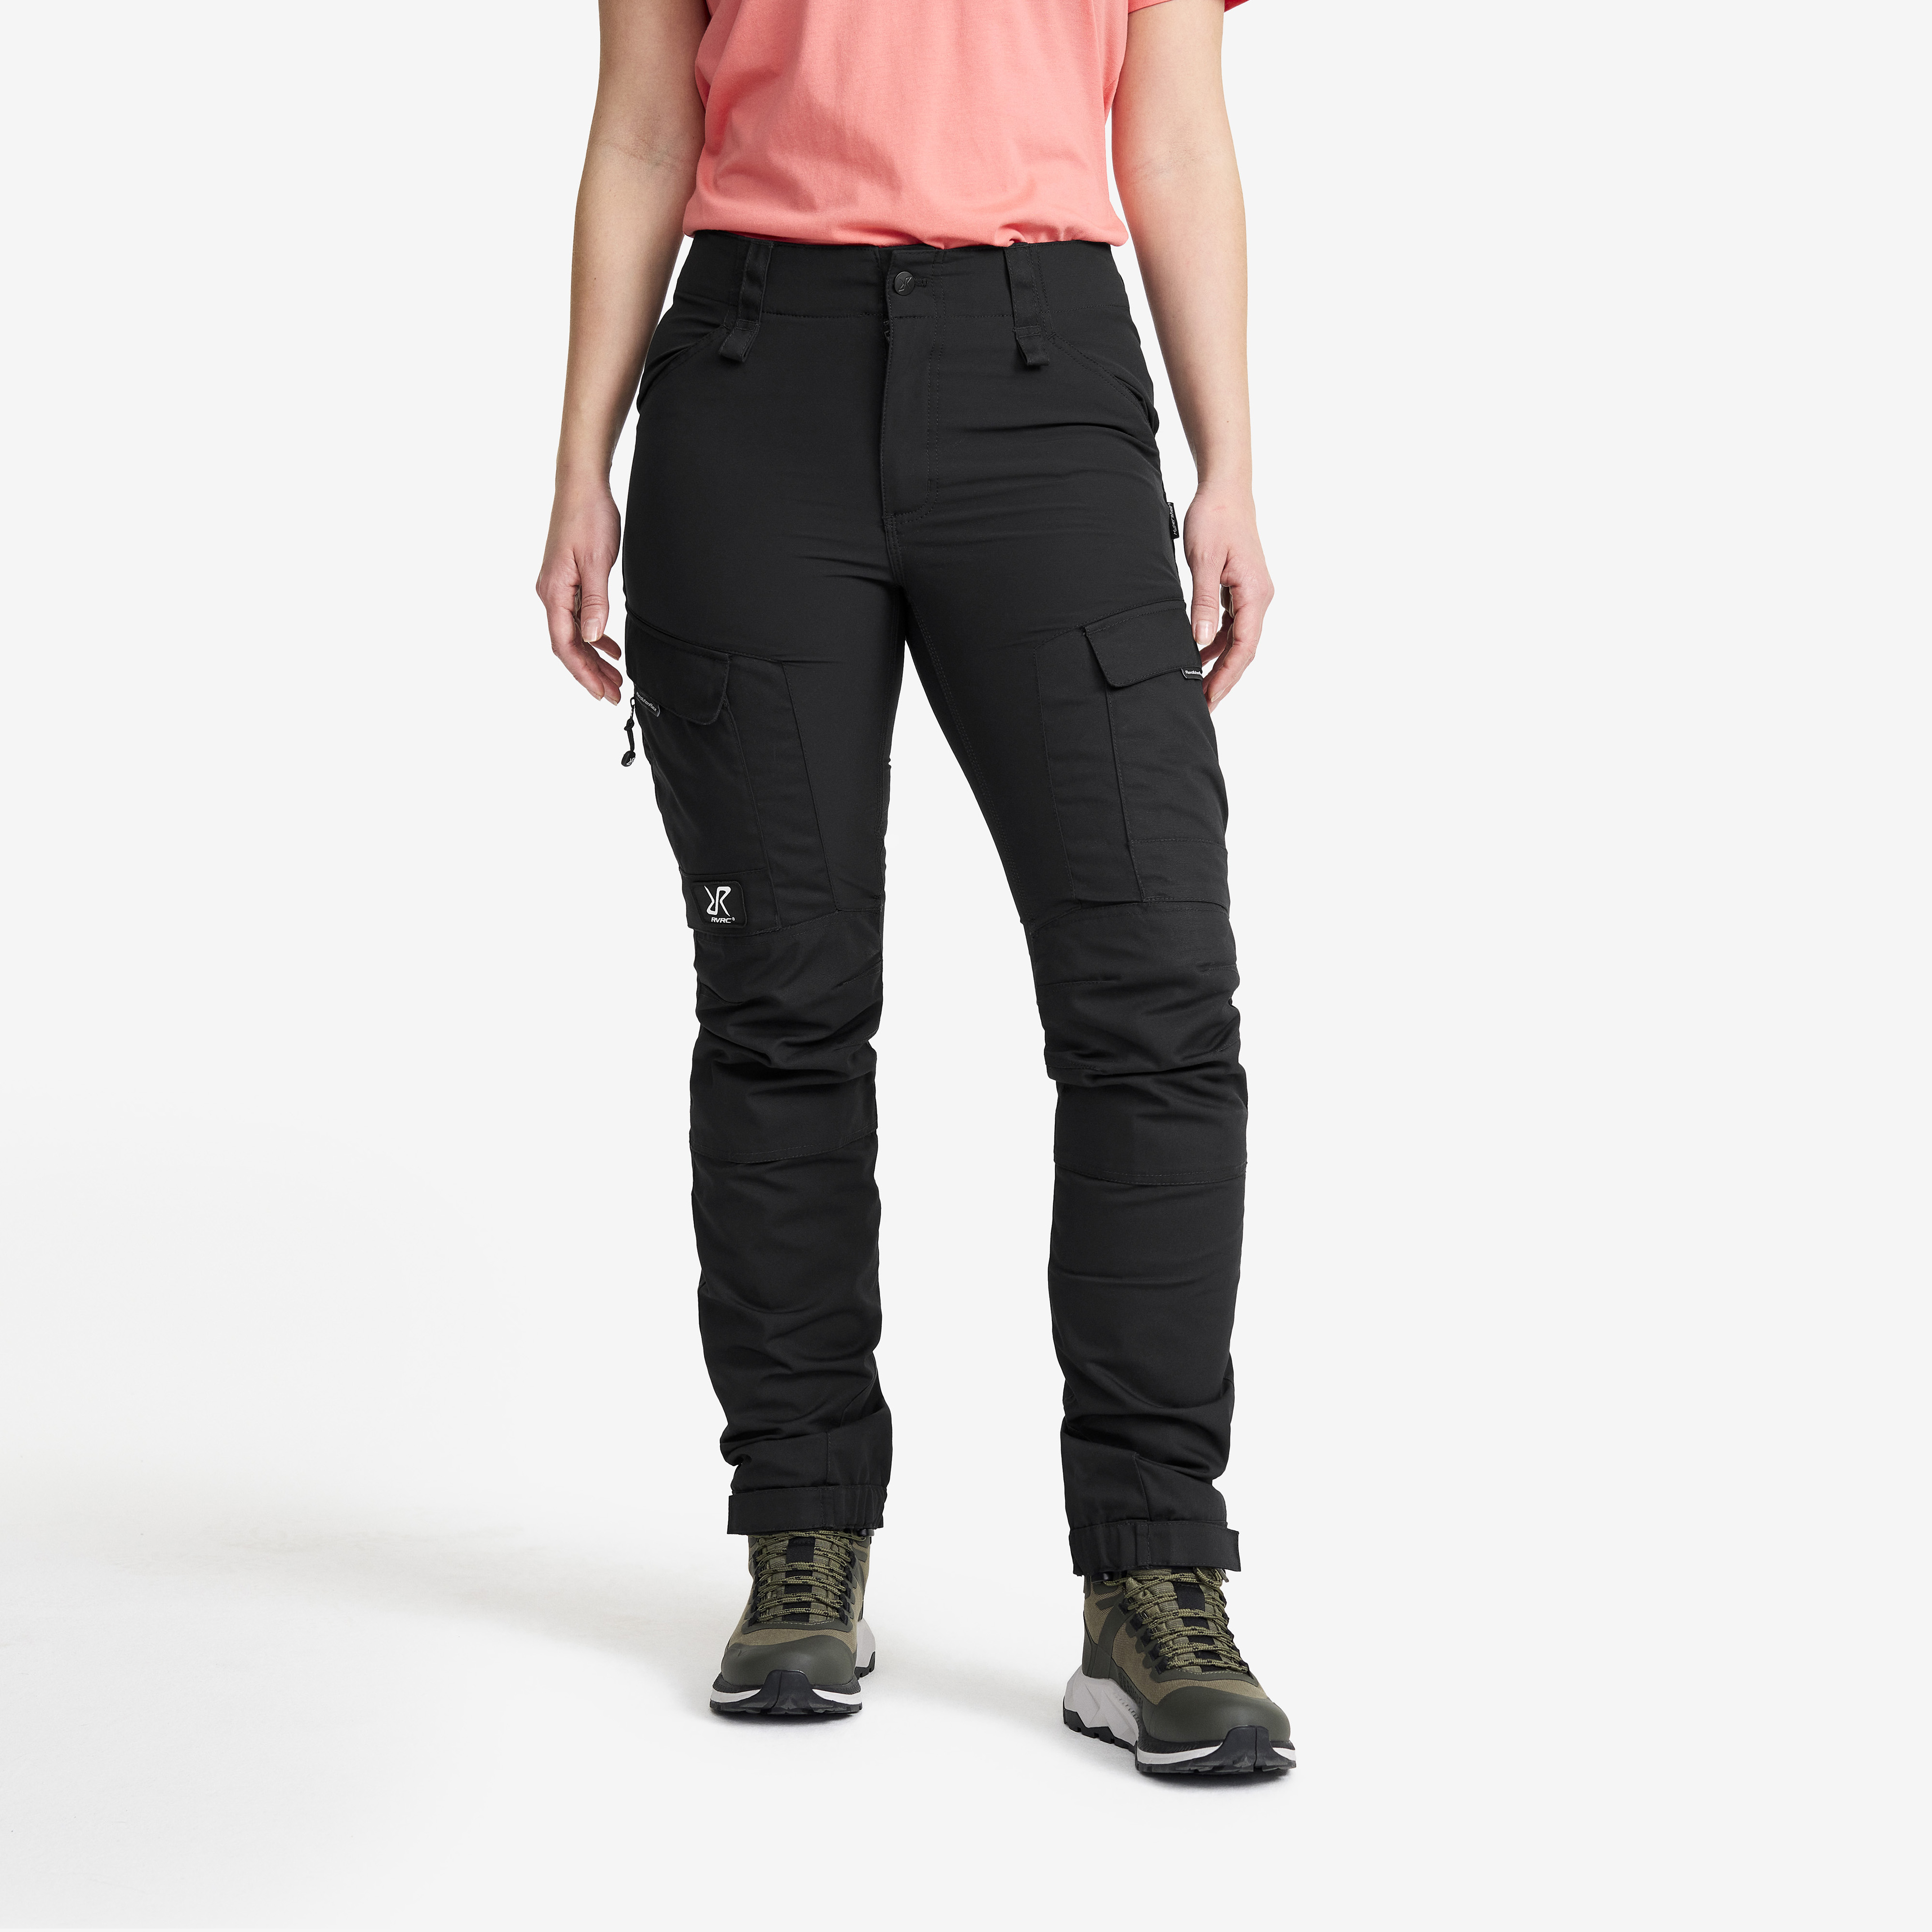 RVRC GP outdoorové kalhoty pro ženy v černé barvě